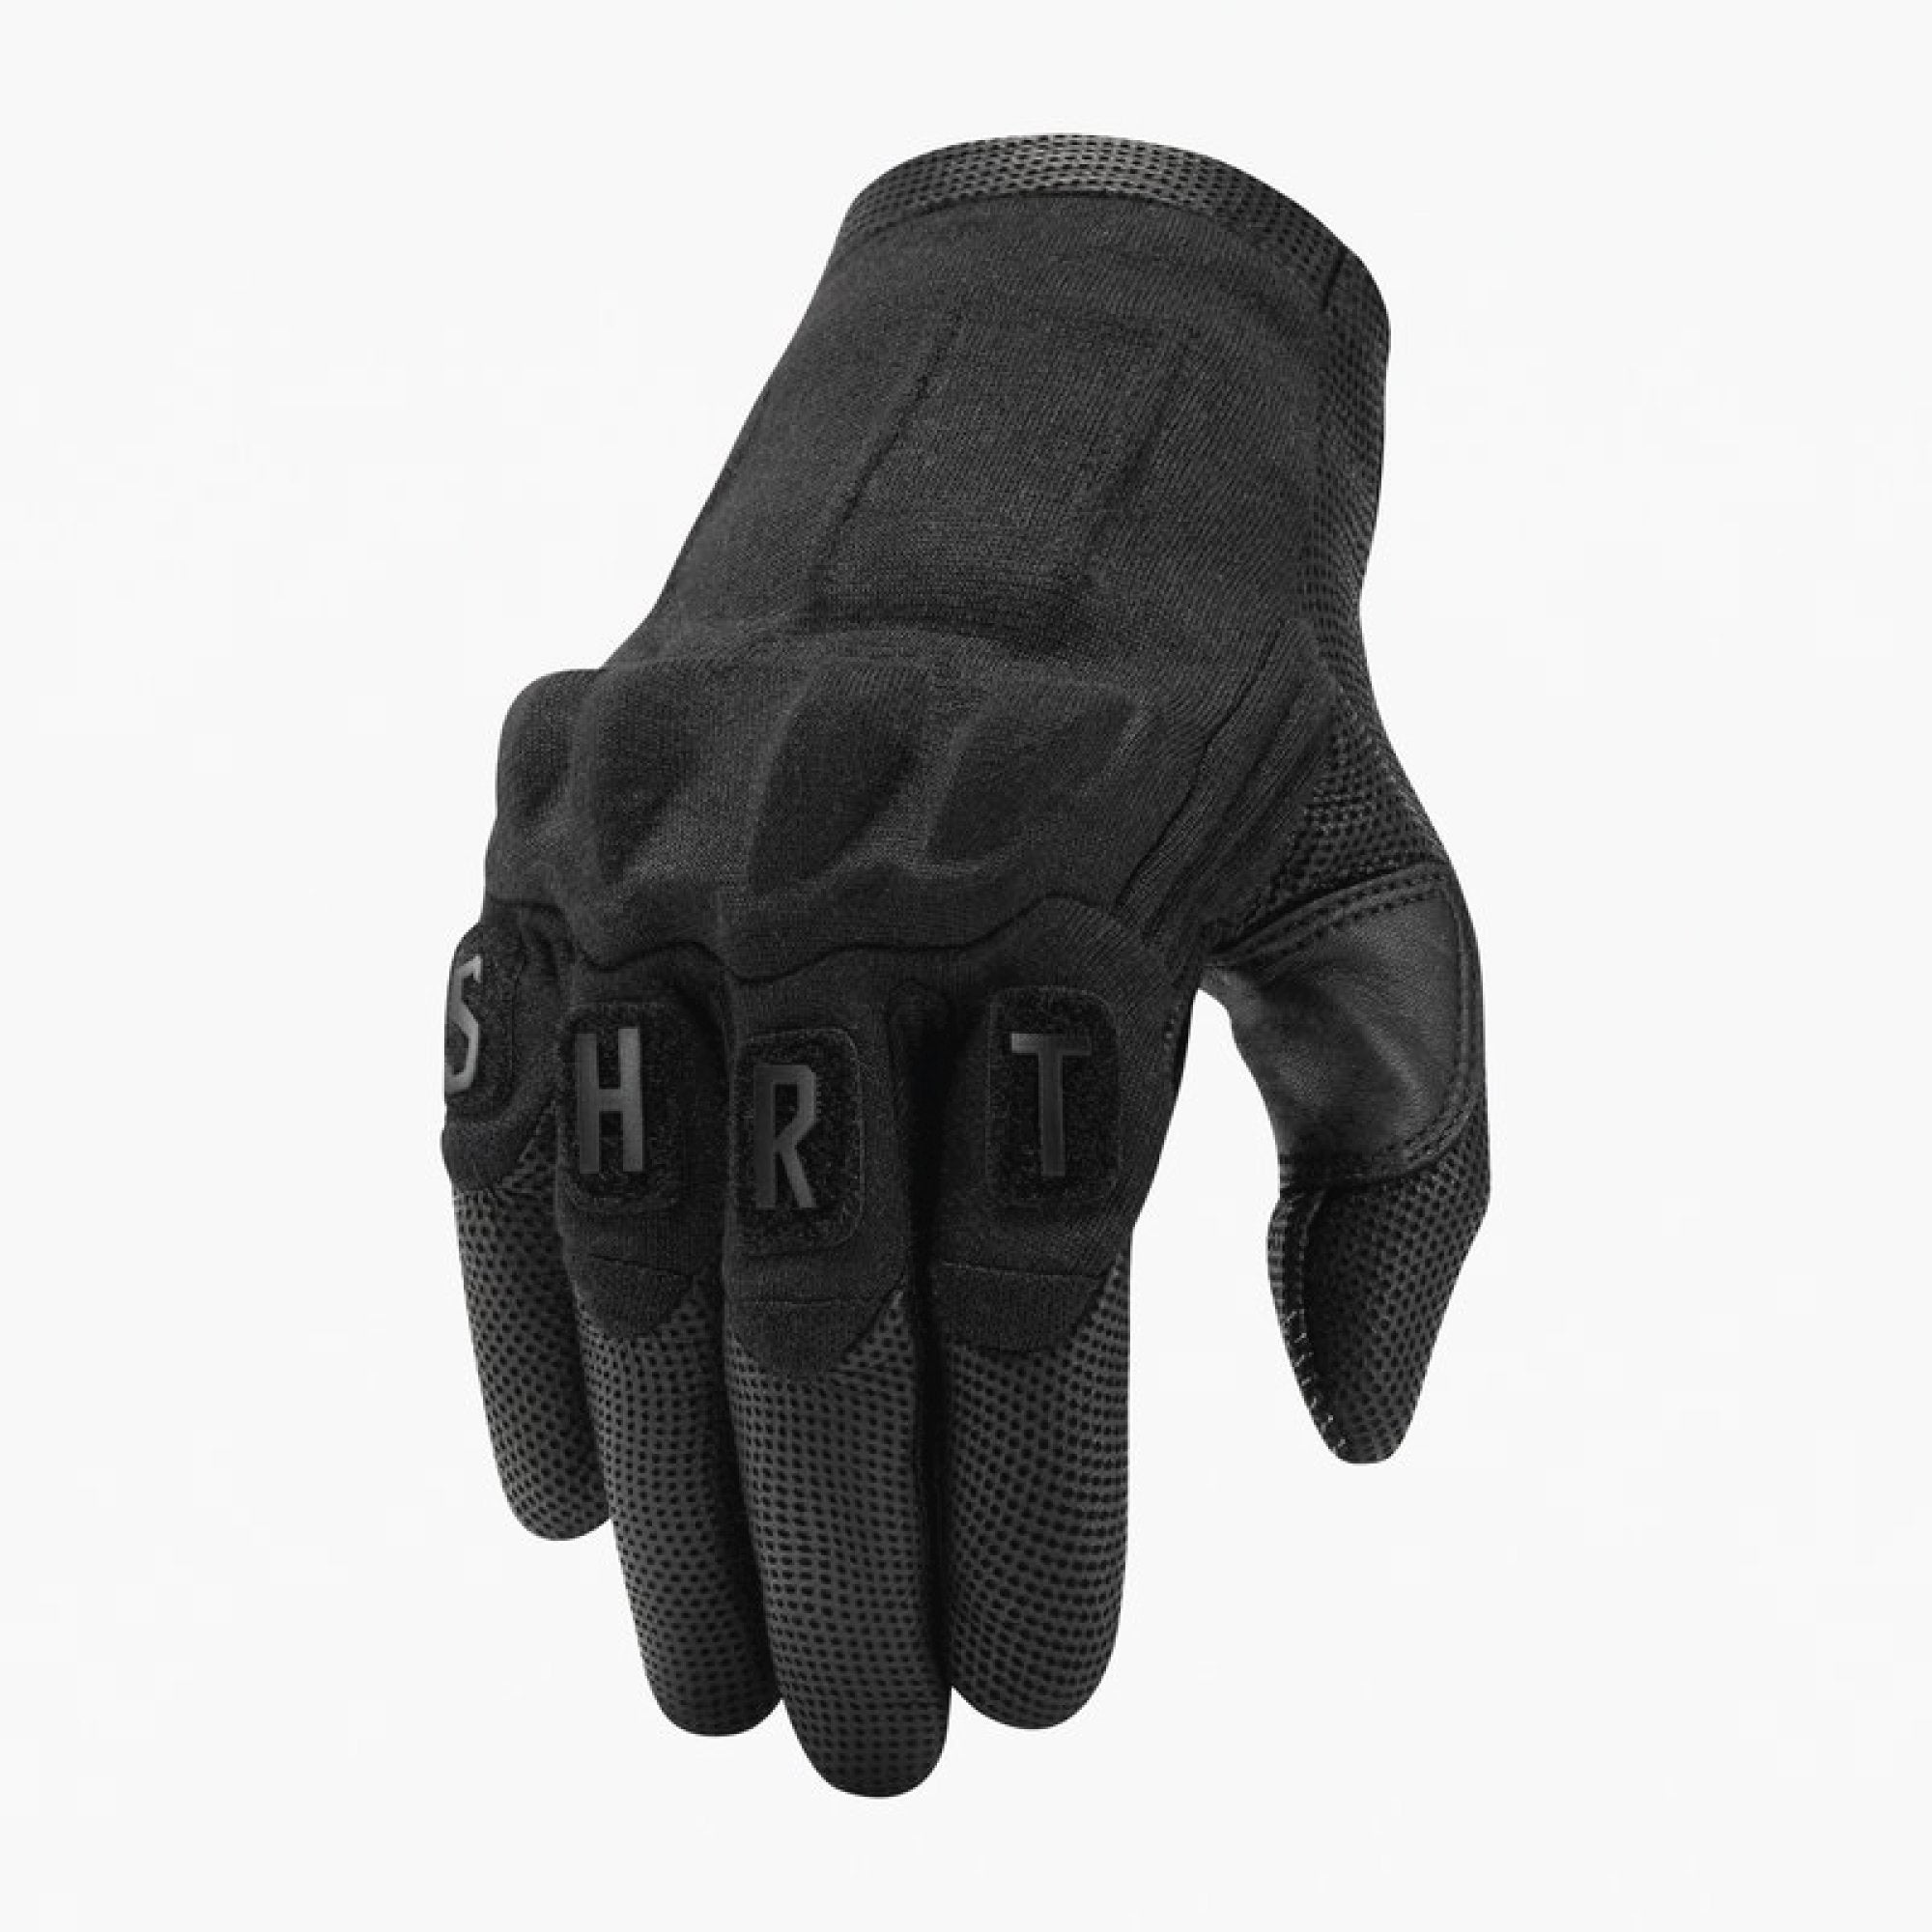 VIKTOS Shortshot Gloves Nightfjall Gloves VIKTOS Small Tactical Gear Supplier Tactical Distributors Australia